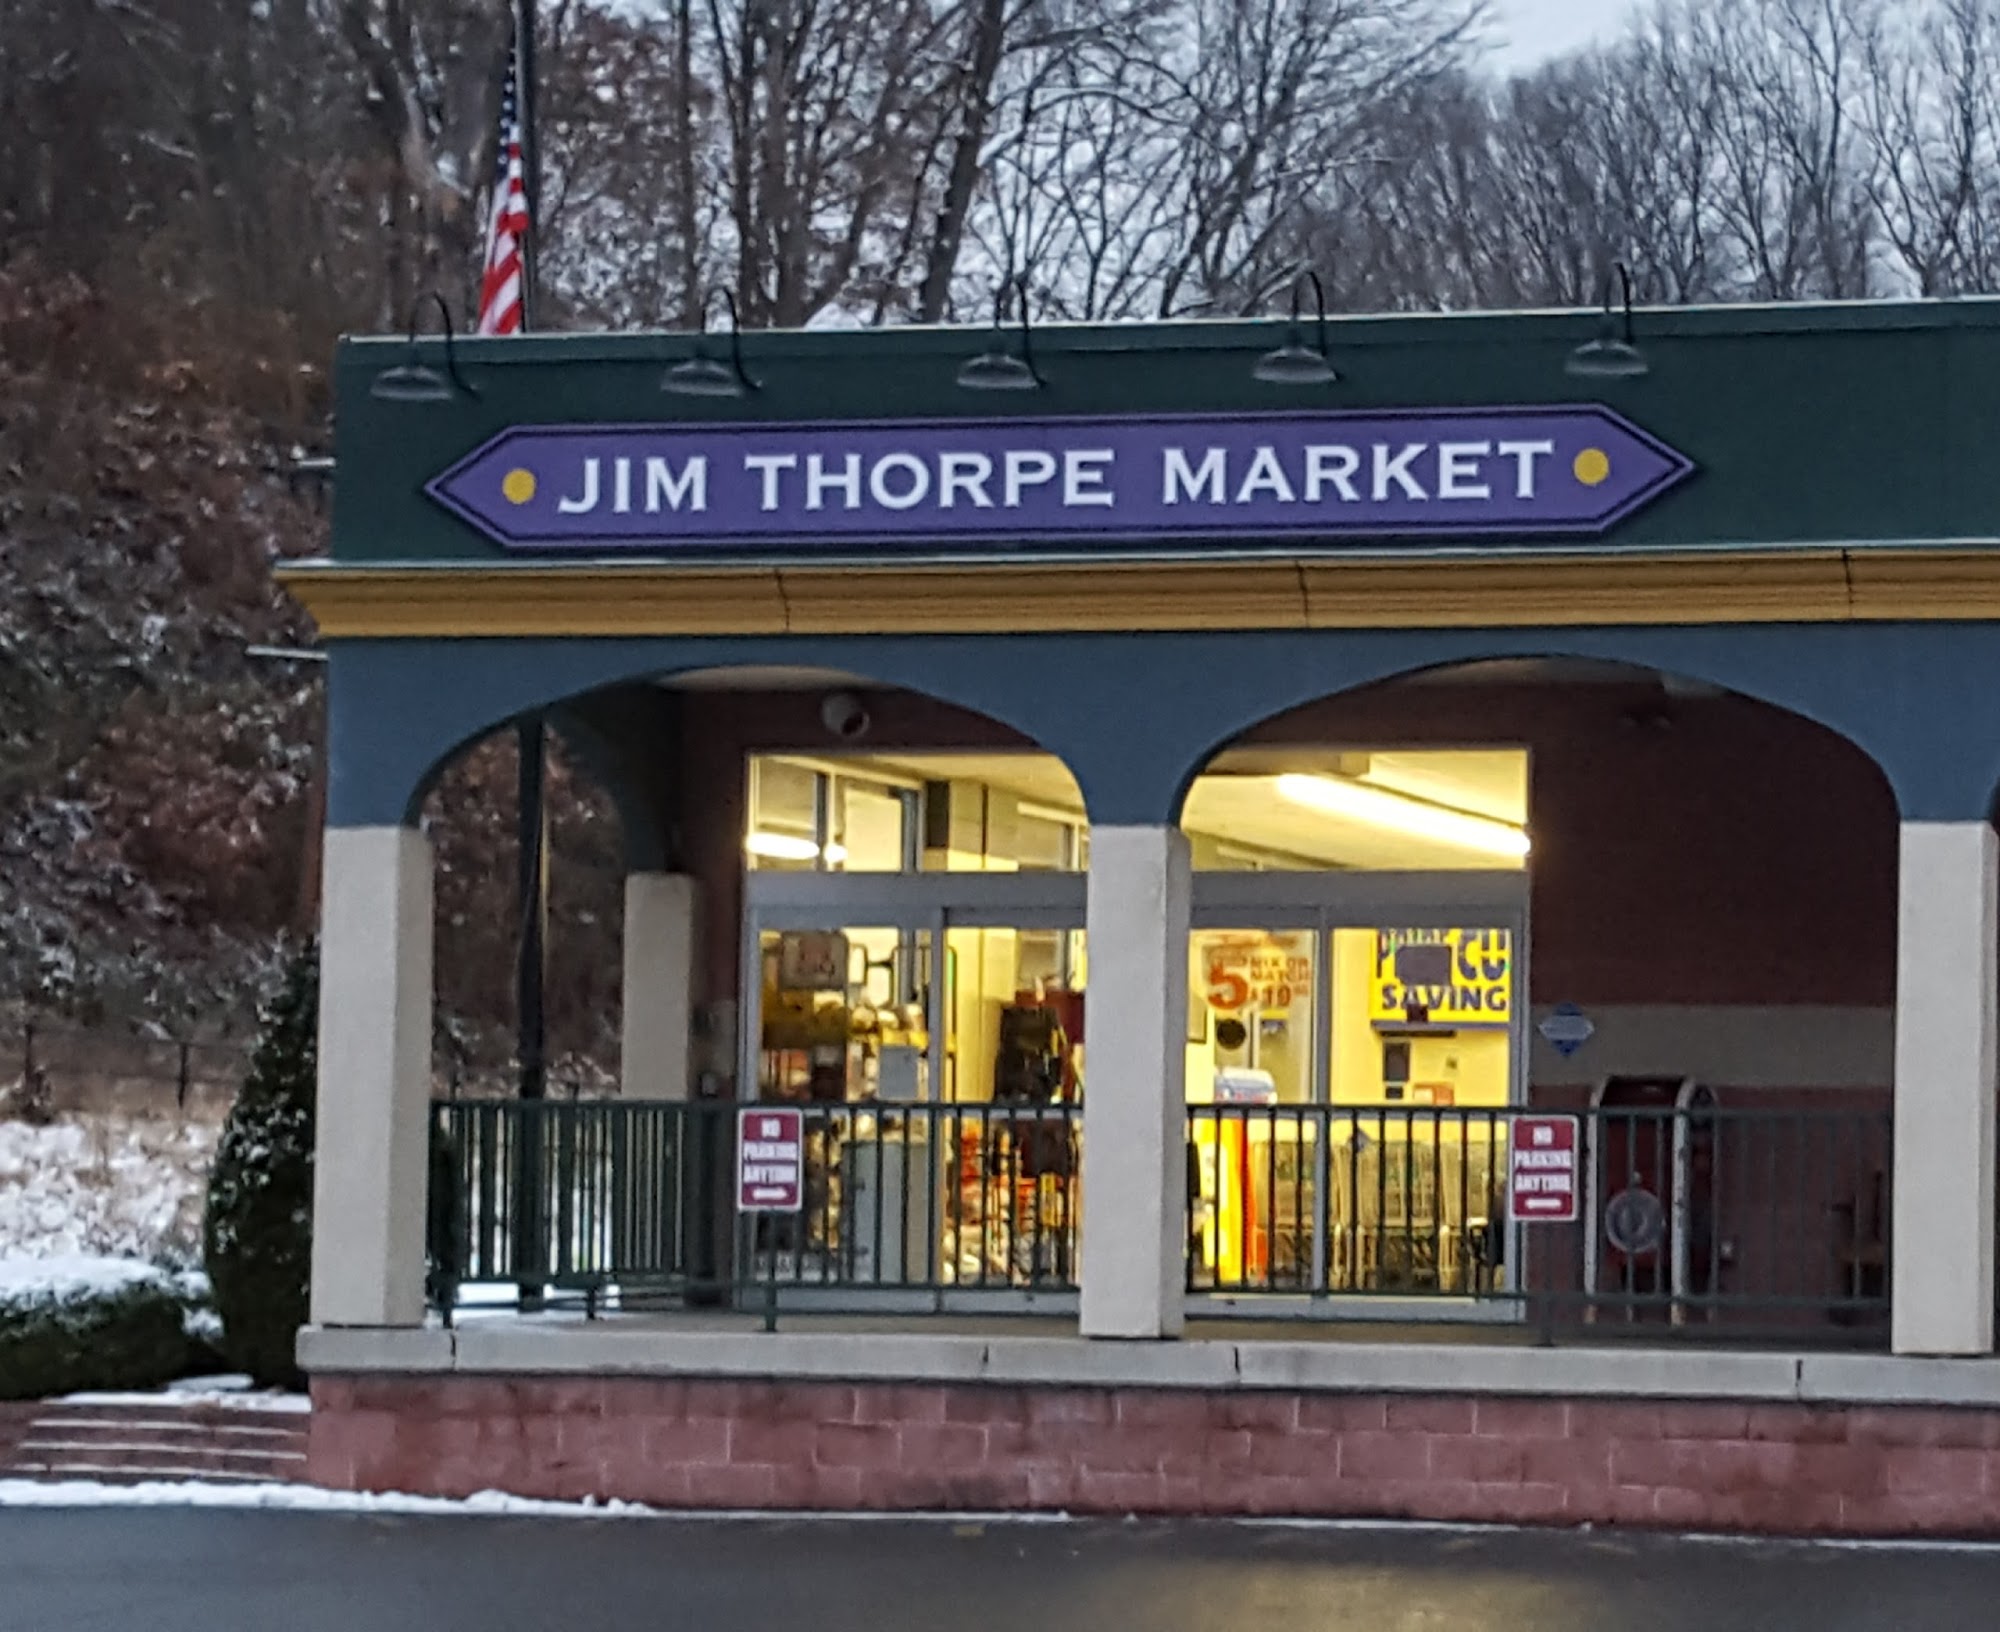 Jim Thorpe Market